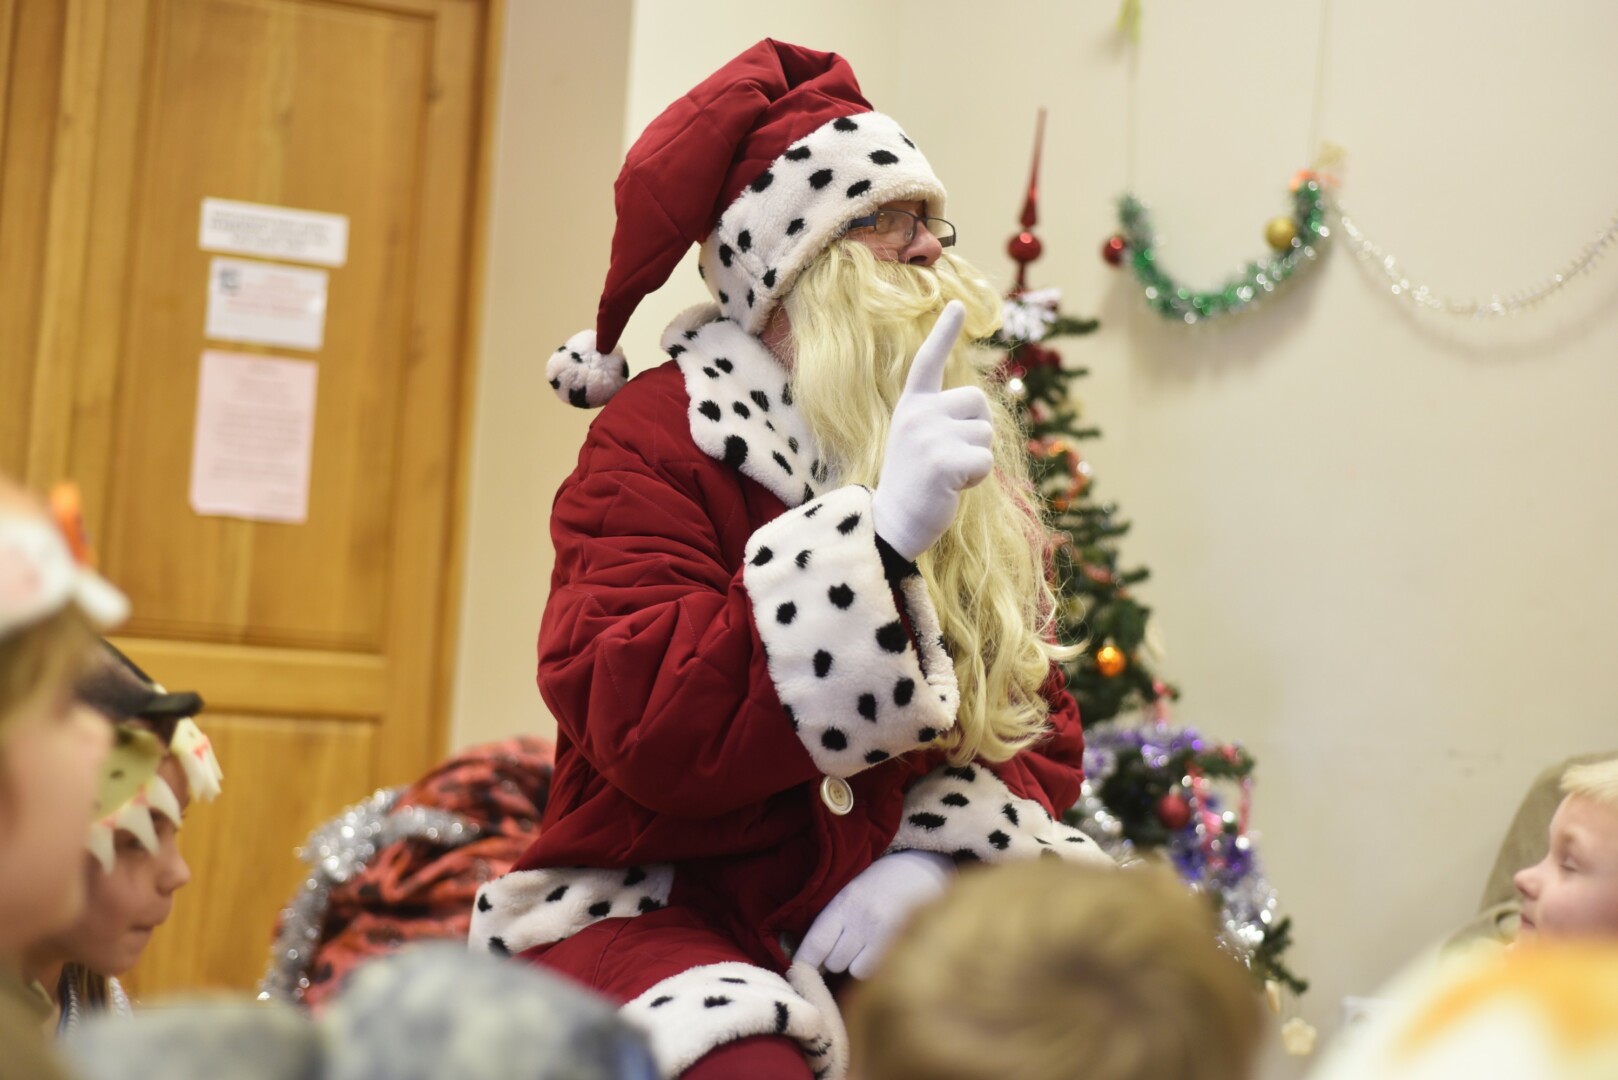 Darželinukams Kalėdų Senelio ieškantys auklėtojai skaičiuoja, kad pasikviesti žilabarzdį grupei kainuoja 60–80 eurų. Už tokią sumą šis valandą bendrauja su vaikais.